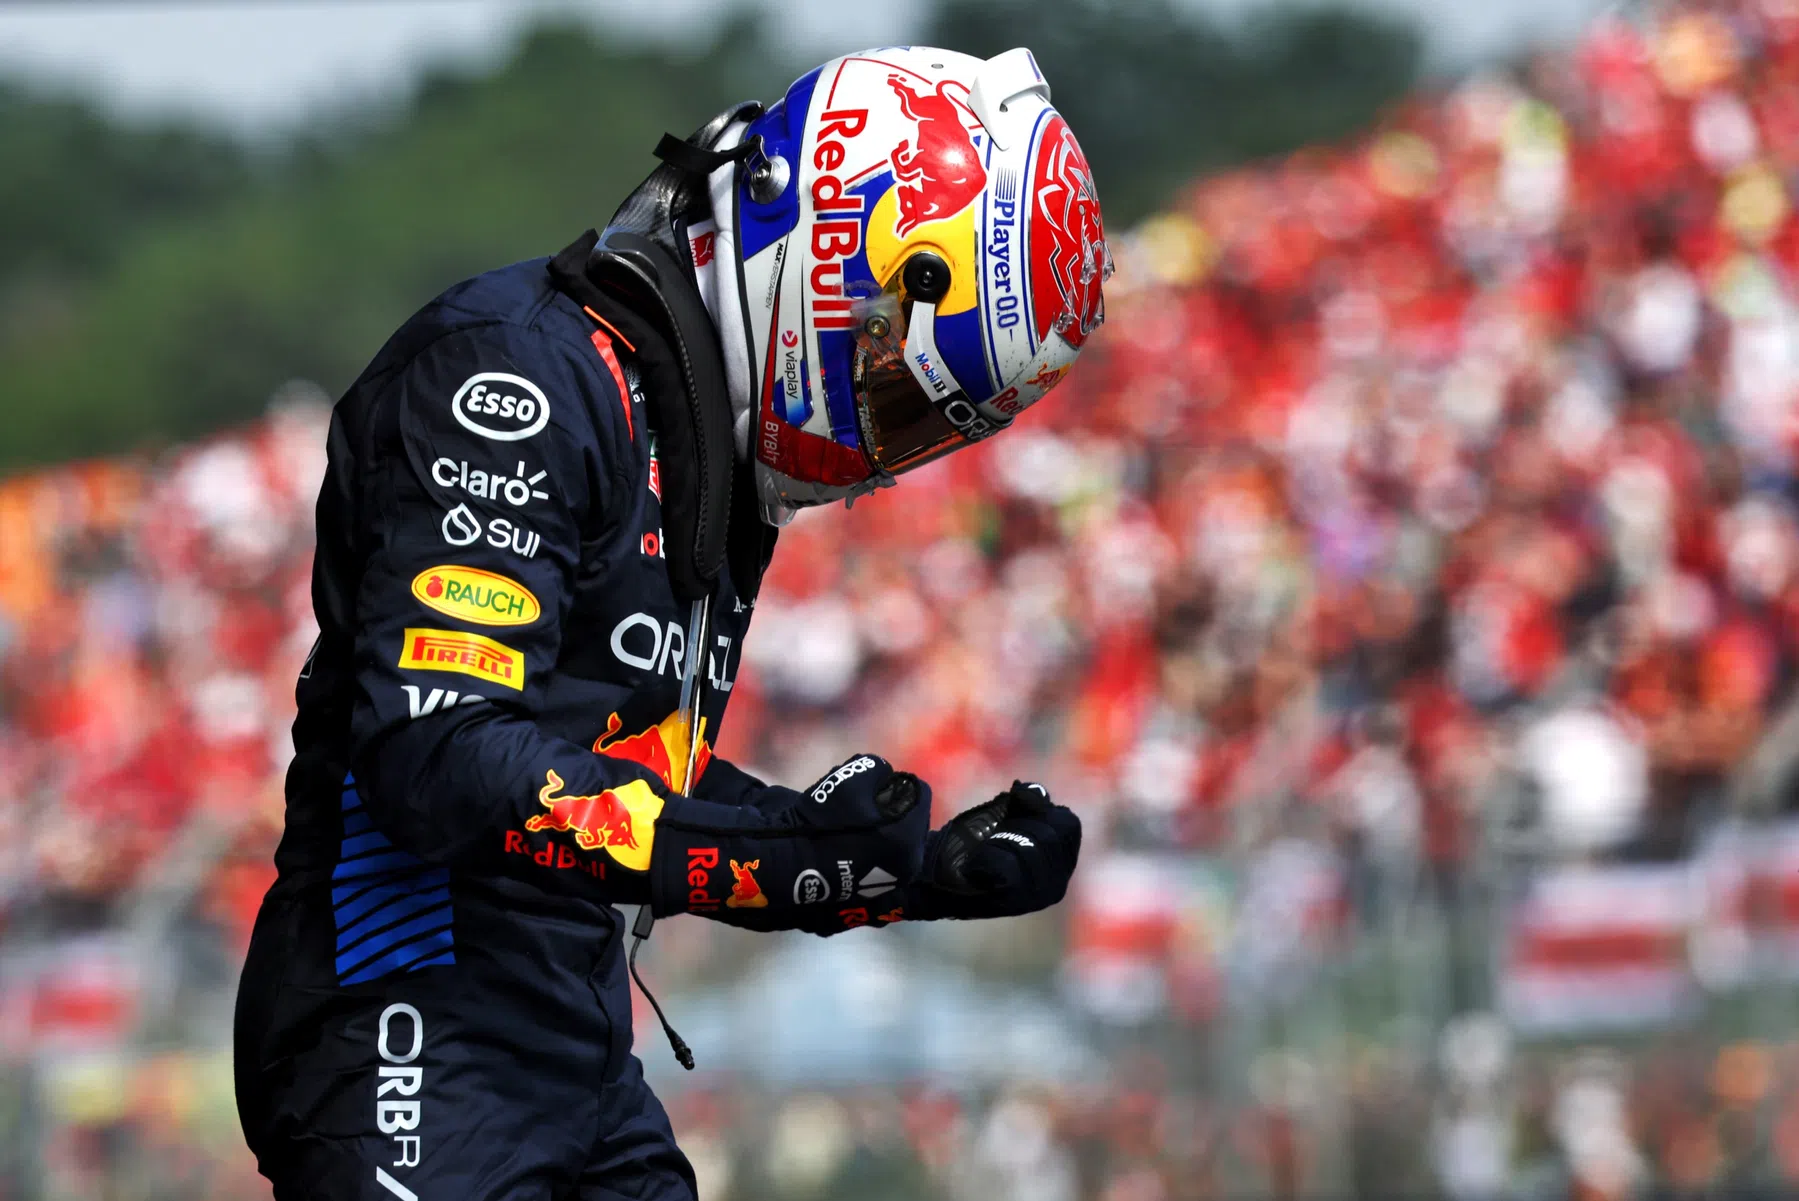 F1 Power Rankings coloca Verstappen no topo novamente a partir de Norris